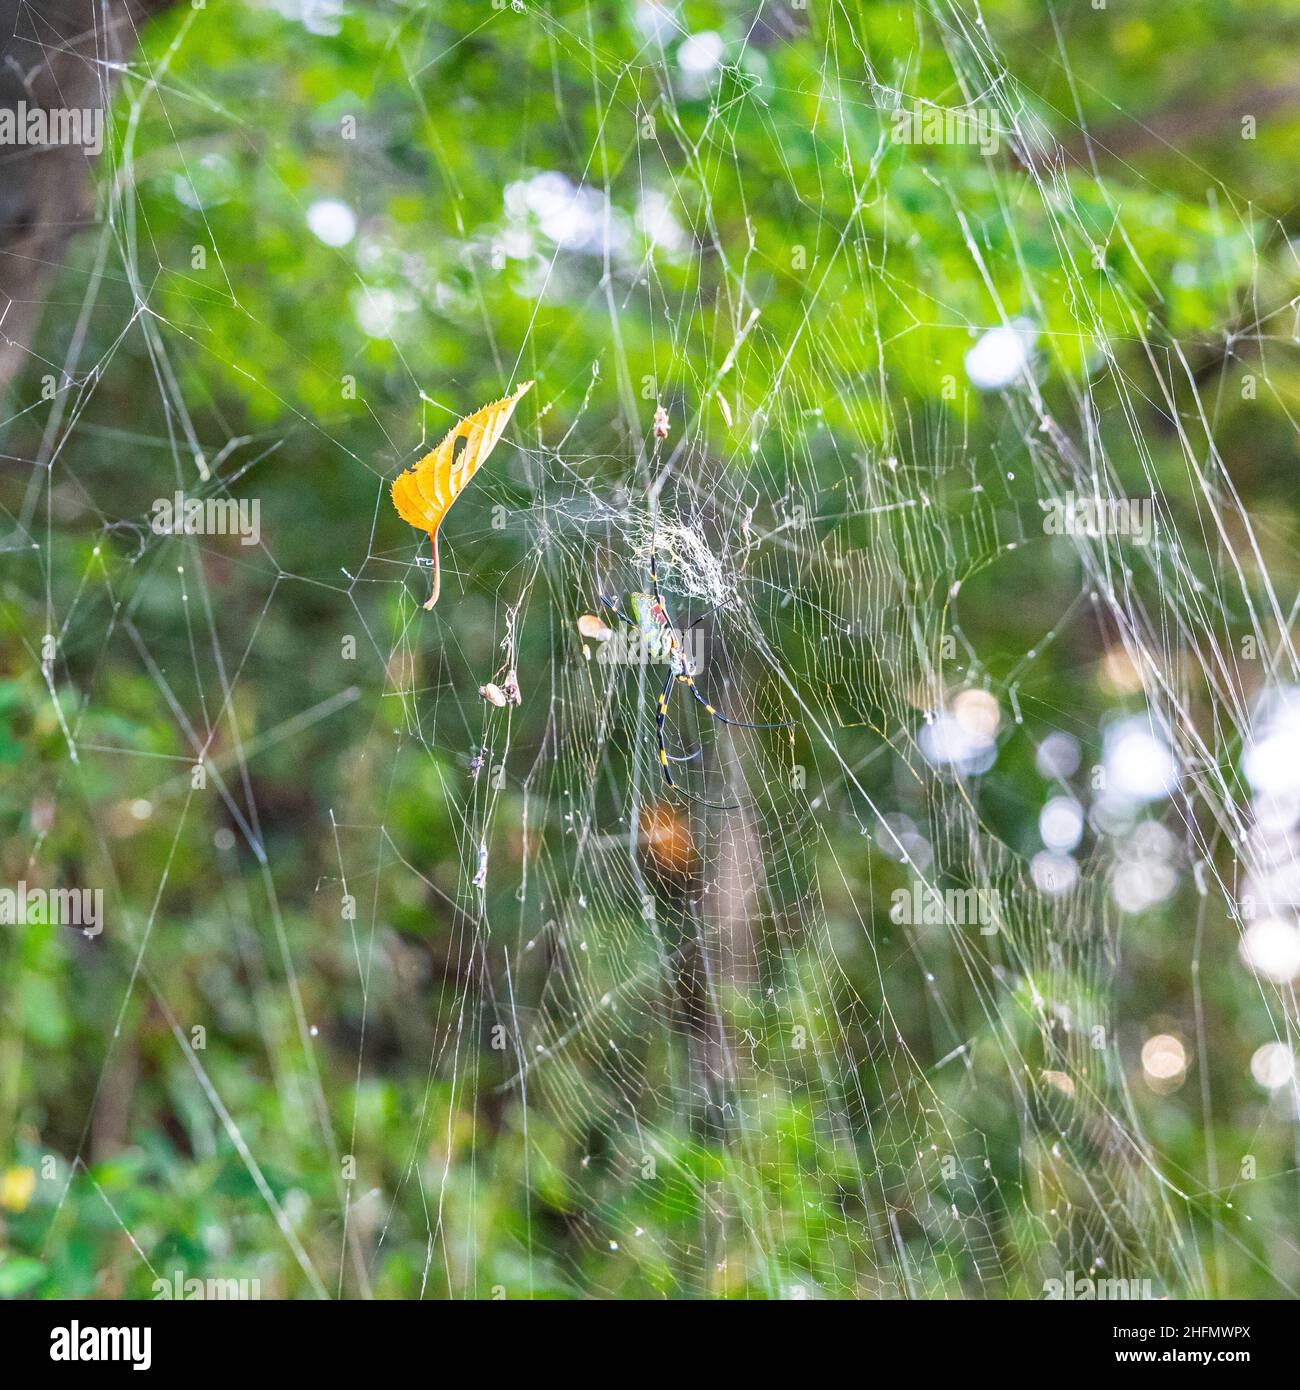 Un gros plan d'une grande araignée joro japonaise, également connue comme une araignée de fortune, sur son web. Banque D'Images